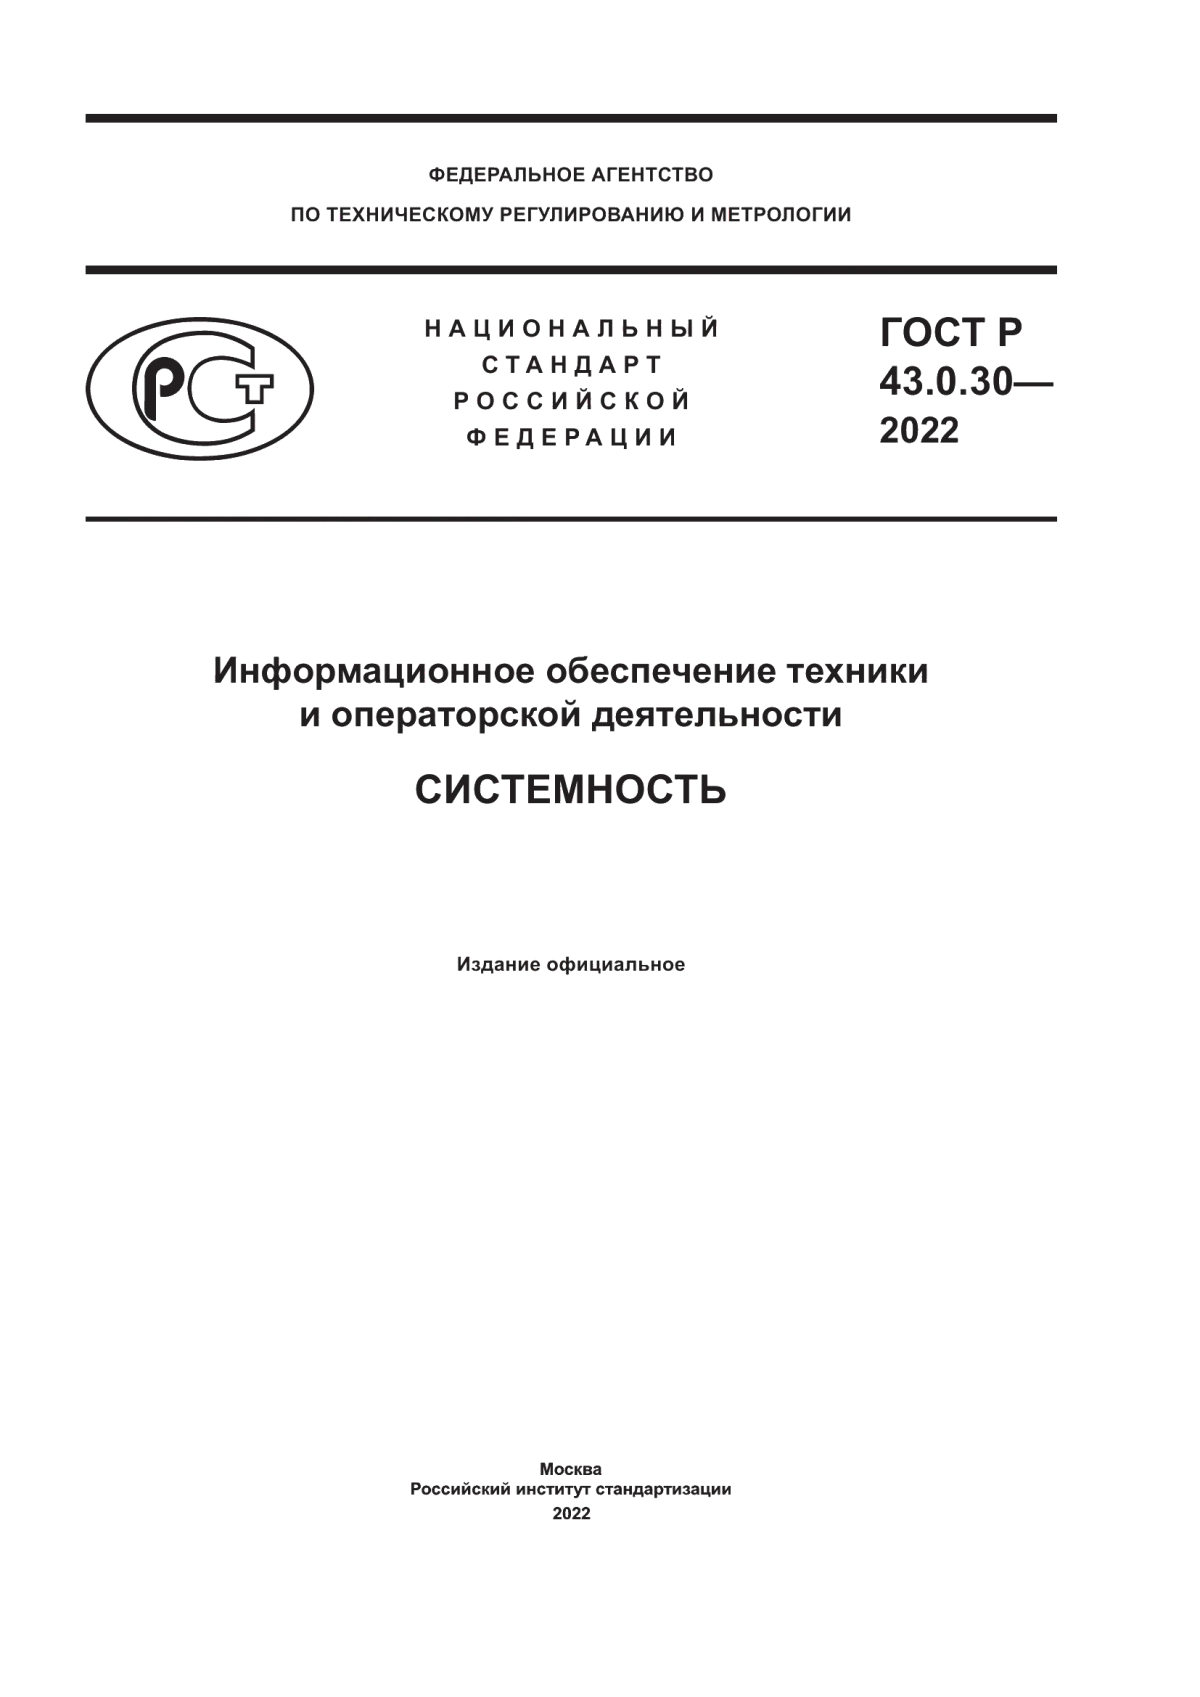 ГОСТ Р 43.0.30-2022 Информационное обеспечение техники и операторской деятельности. Системность